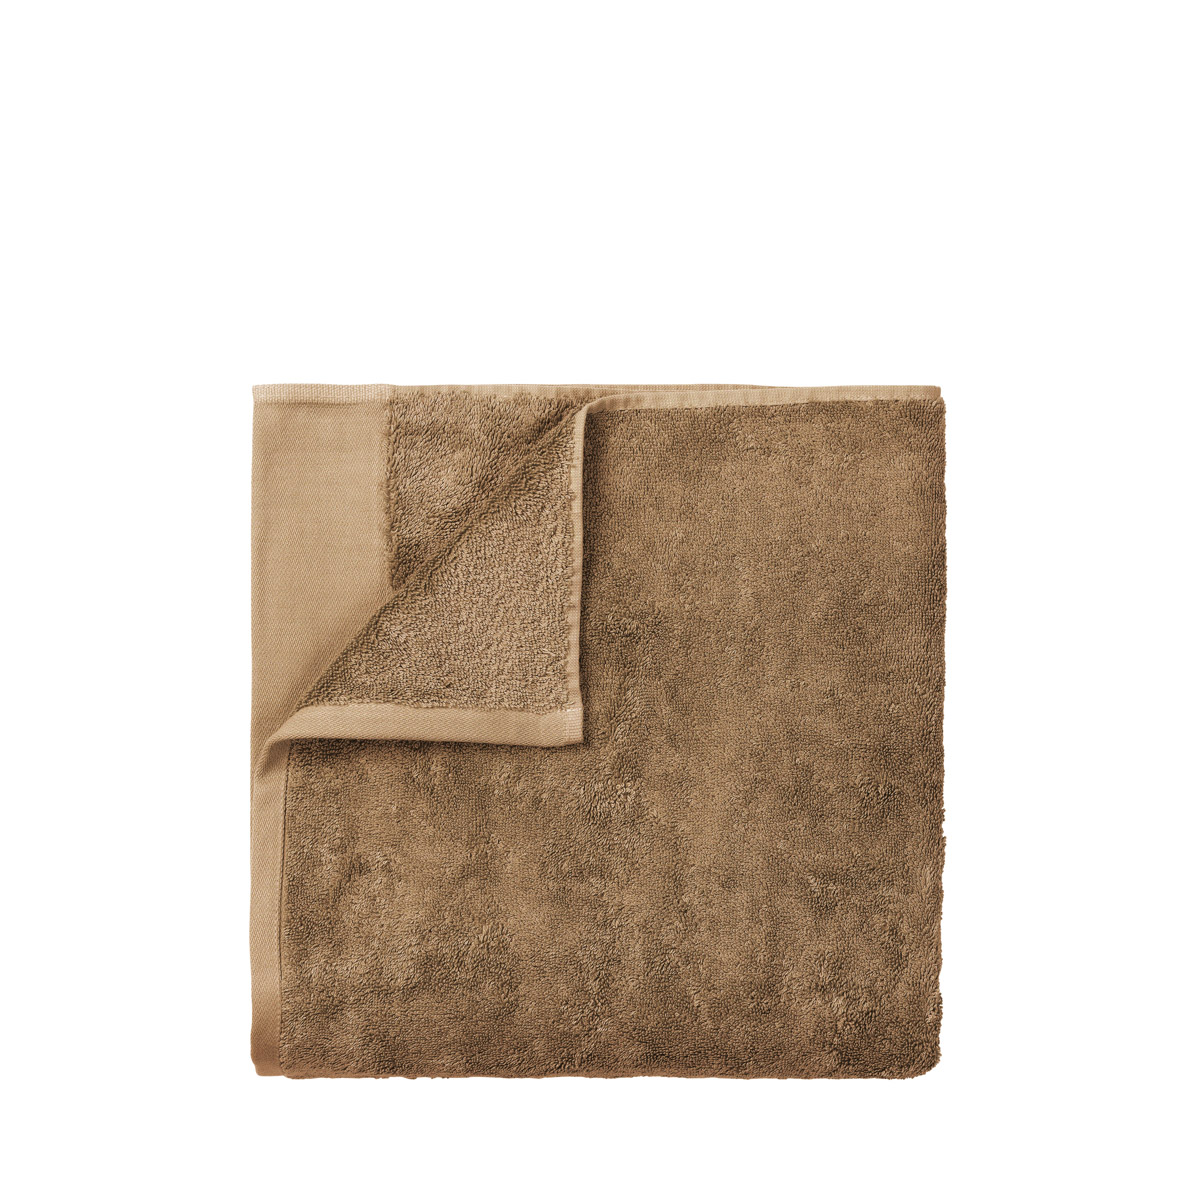 Handtuch -RIVA- Tan 50 x 100 cm, features: text Bio Baumwolle, GOTS. Material: Baumwolle. Von Blomus.